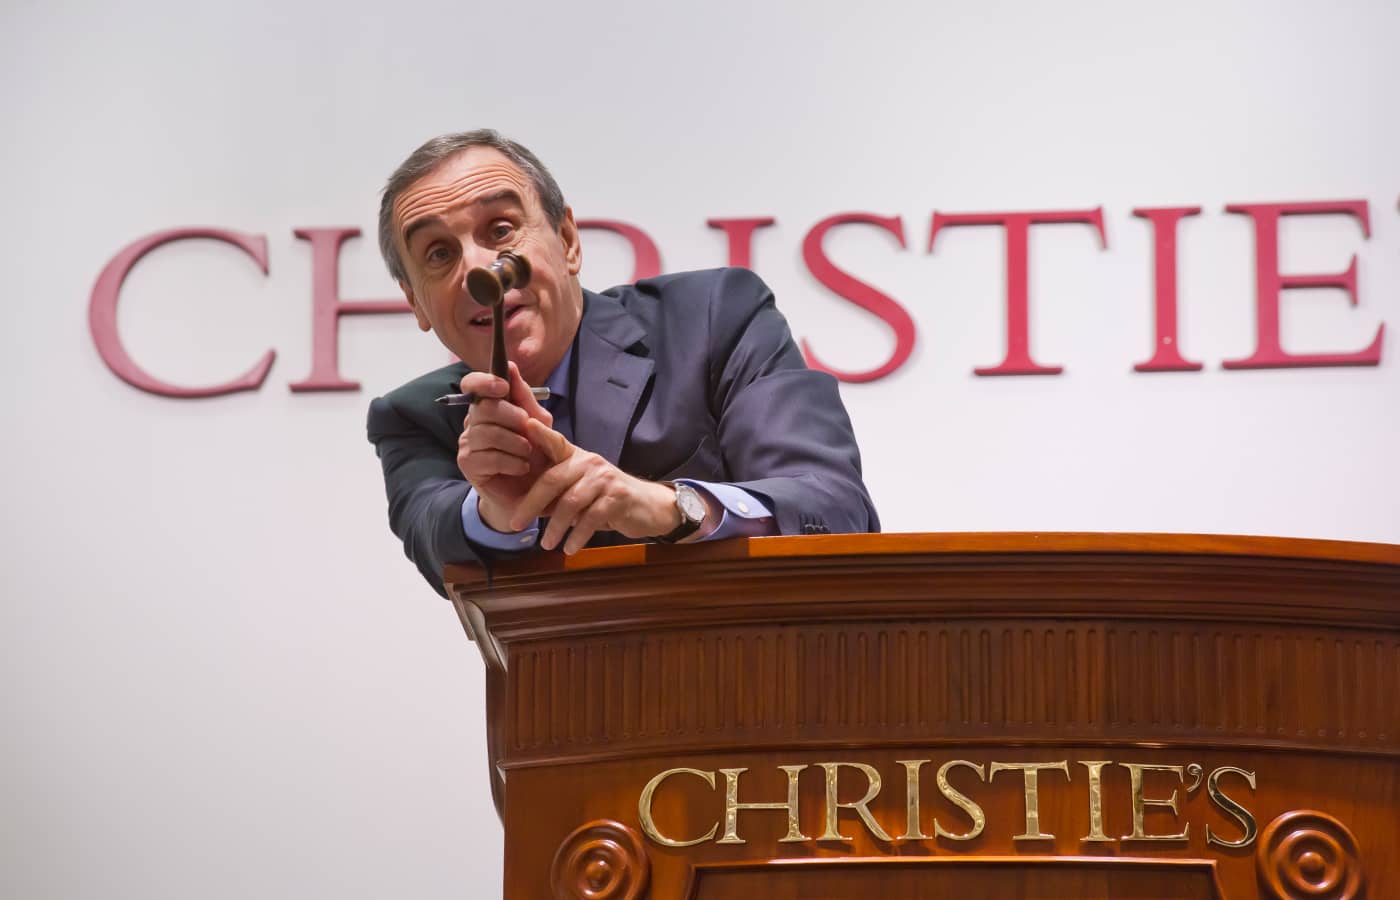 François Curiel, Chairman of Christie’s Europe